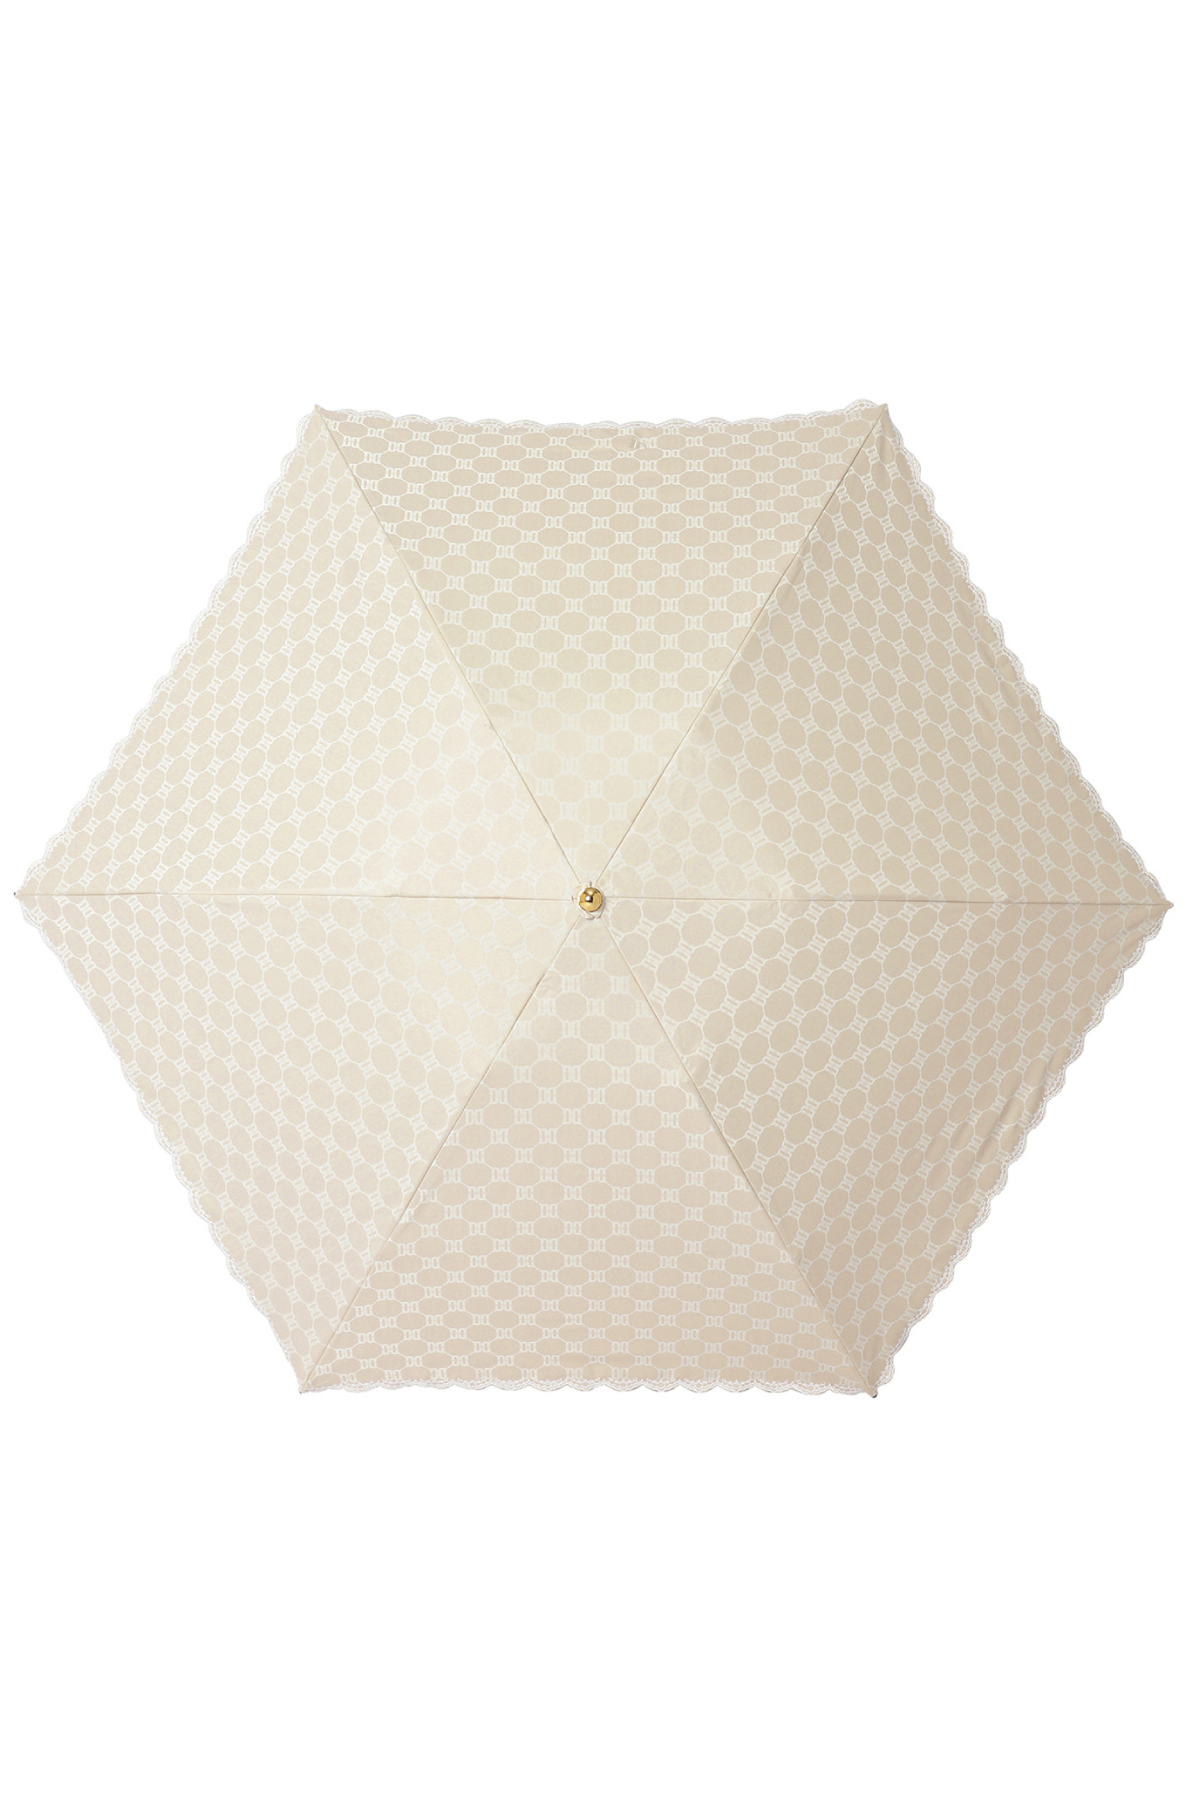 【日傘】ミニ折りたたみ傘ロゴジャカード刺繍 詳細画像 3